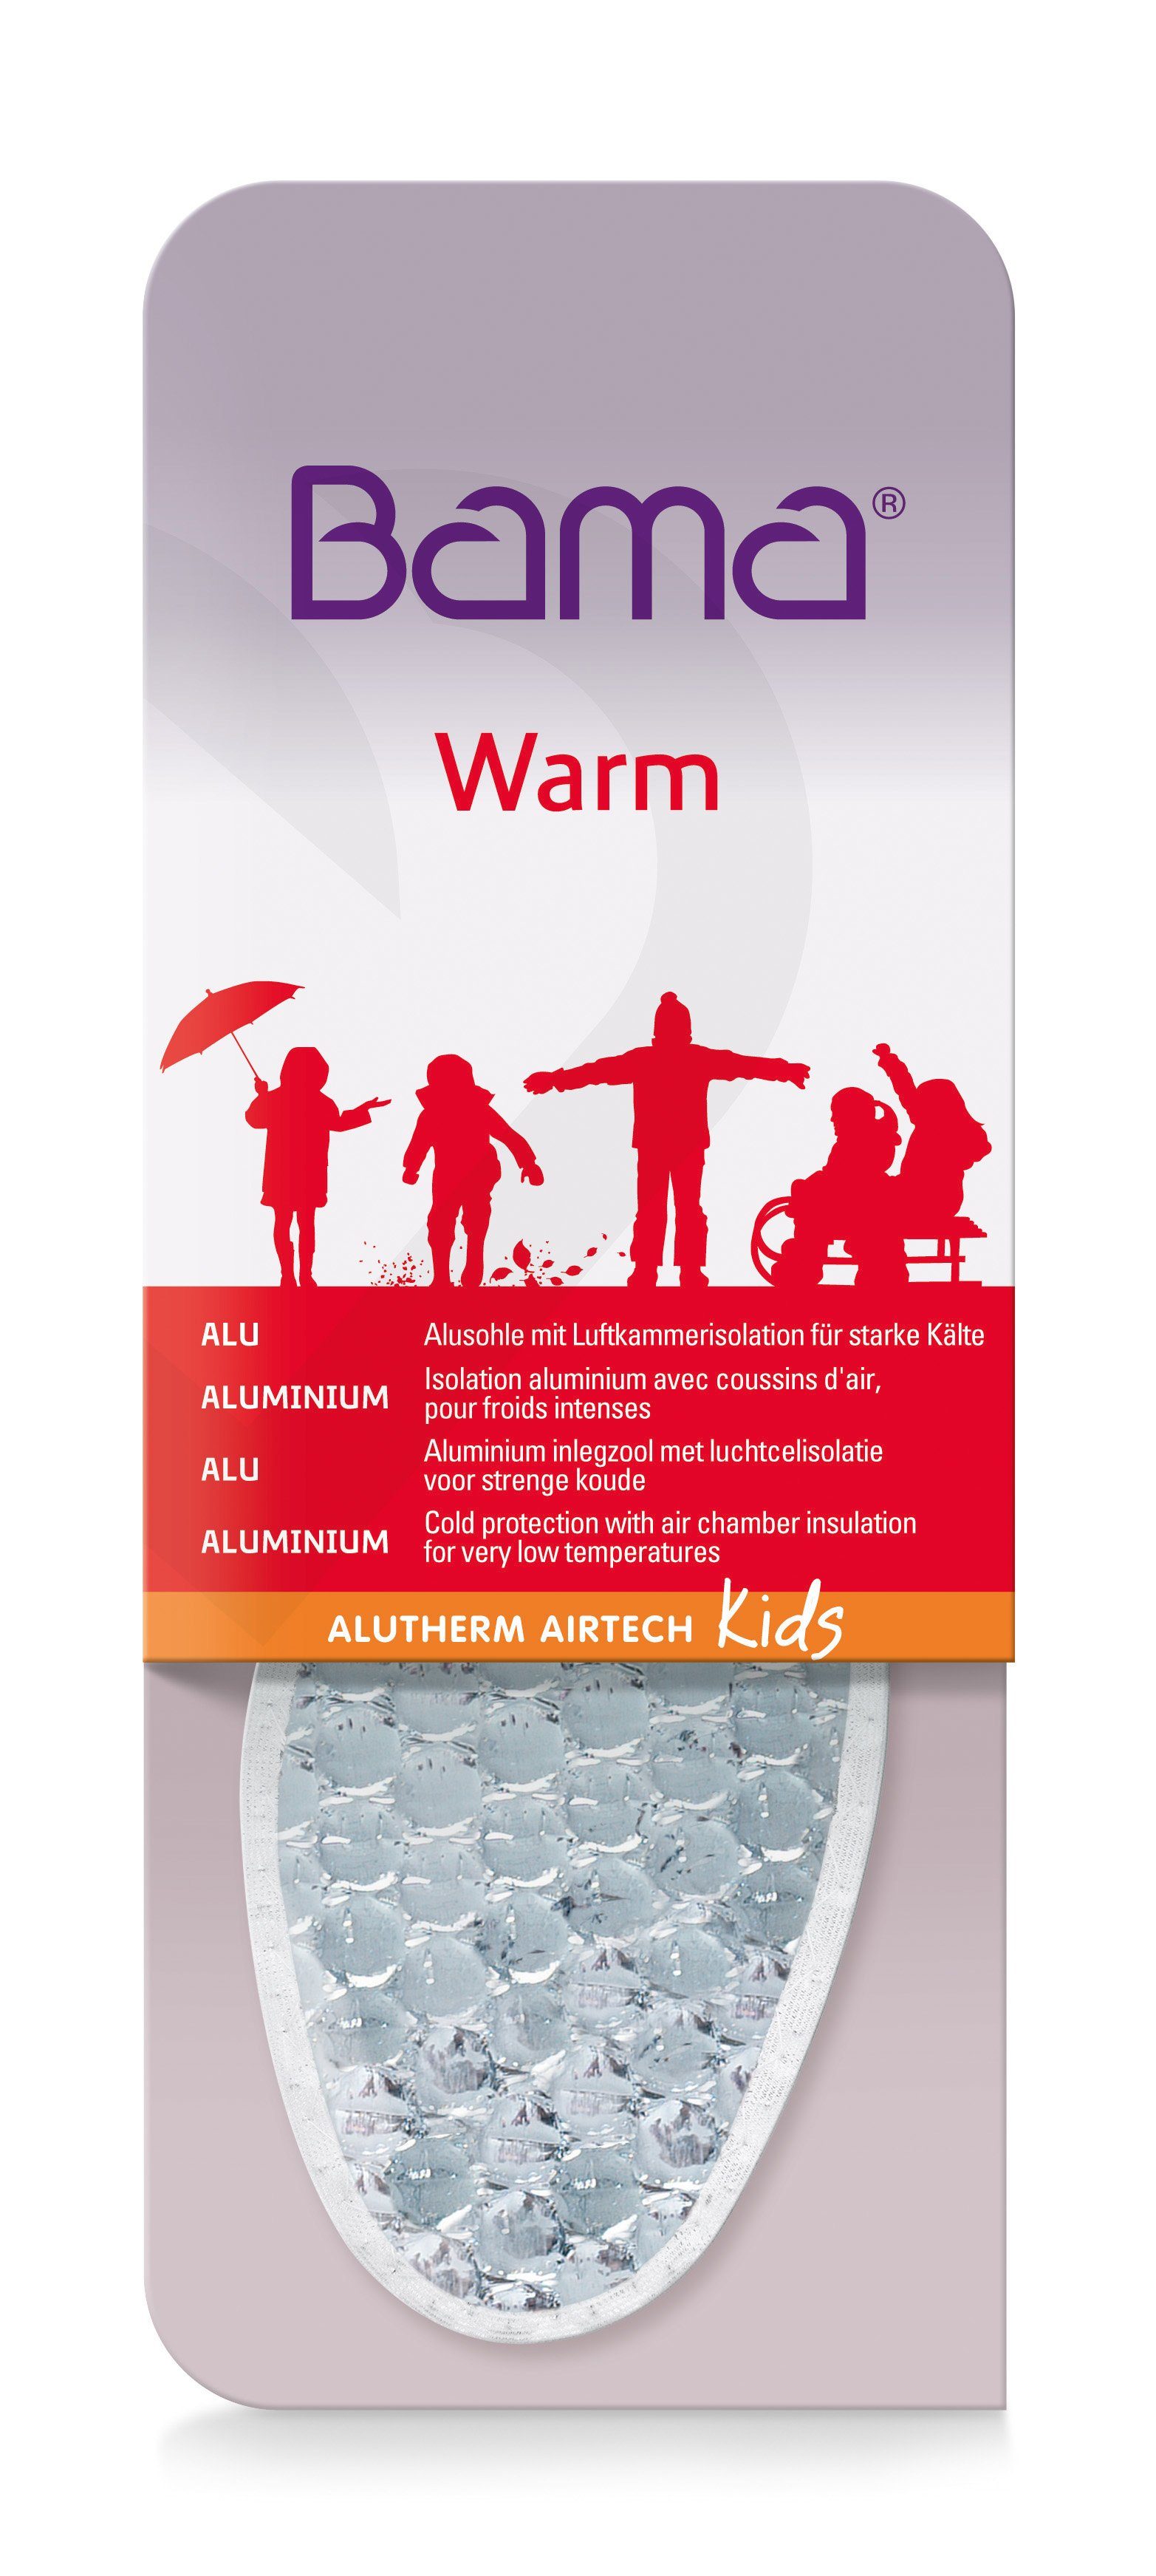 Group für starke Kids BAMA mit Luftkammerisolation Thermosohlen Alutherm Kälte Airtech -